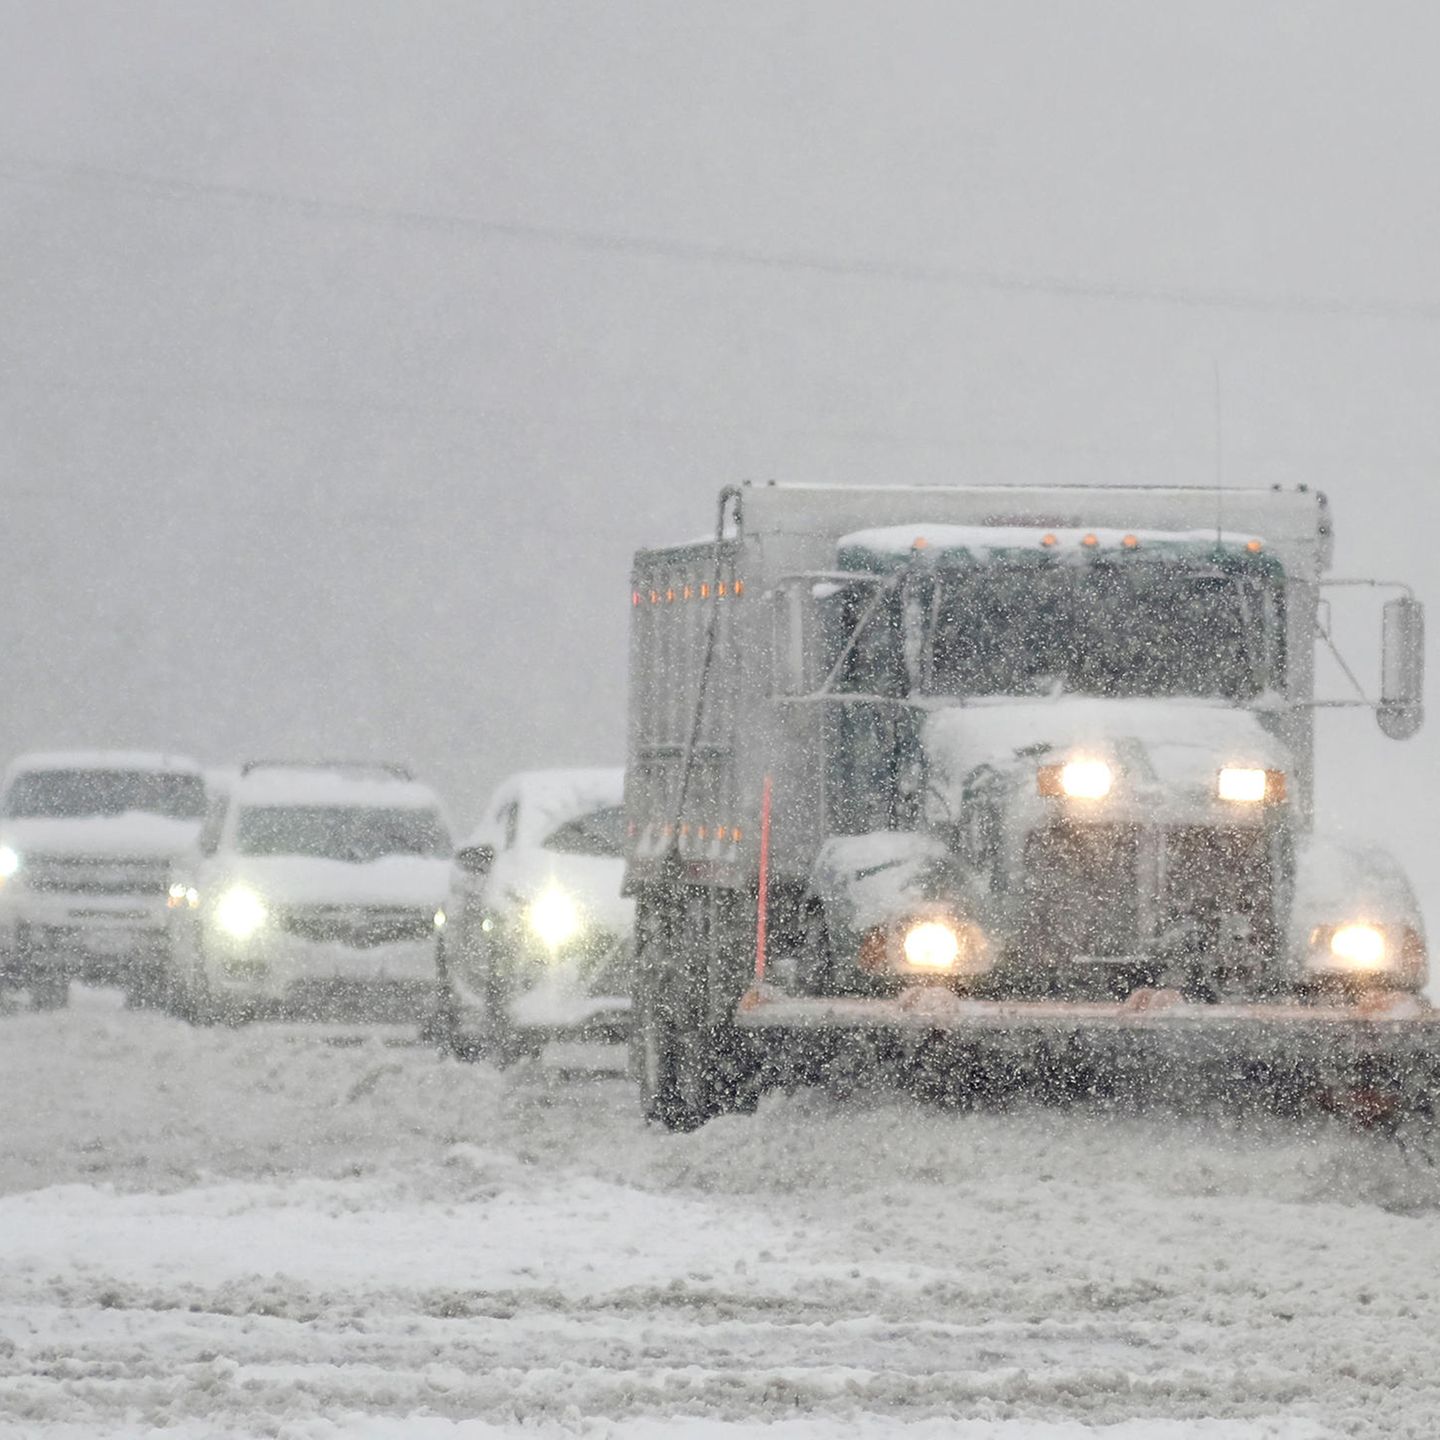 USA: Schneepflug stößt auf eingeschneites Auto – samt Frau darin